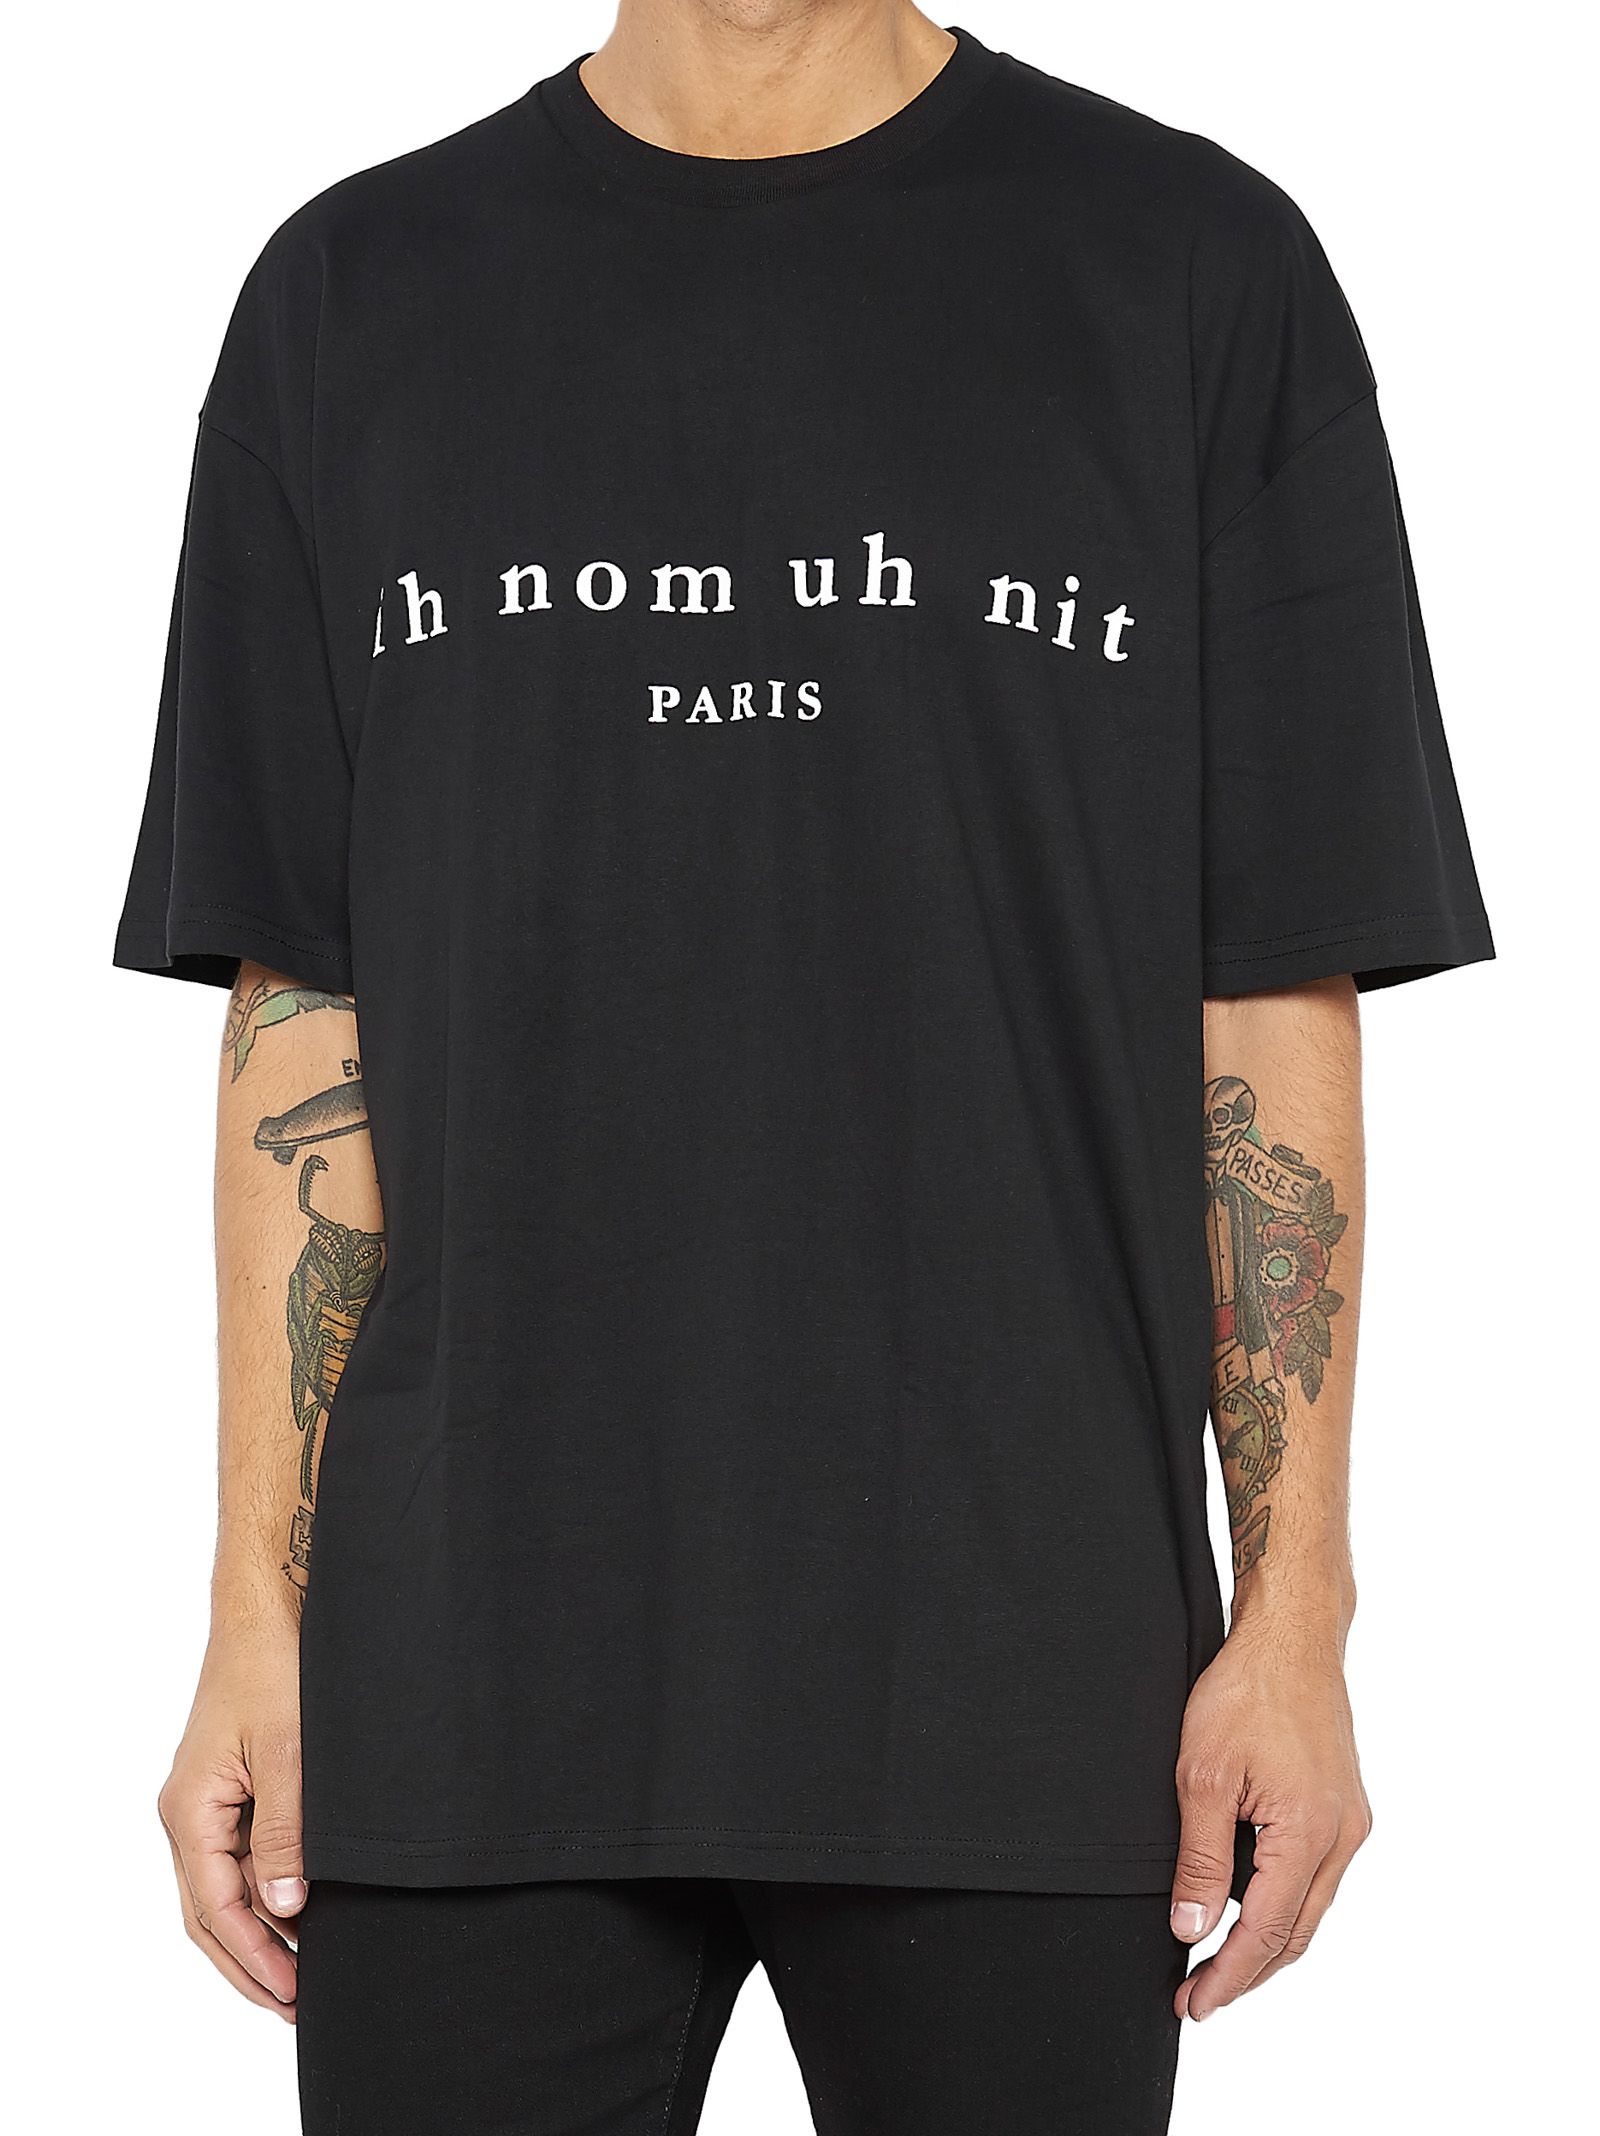 ih nom uh nit - Ih Nom Uh Nit T-shirt - Black, Men's Short Sleeve T ...